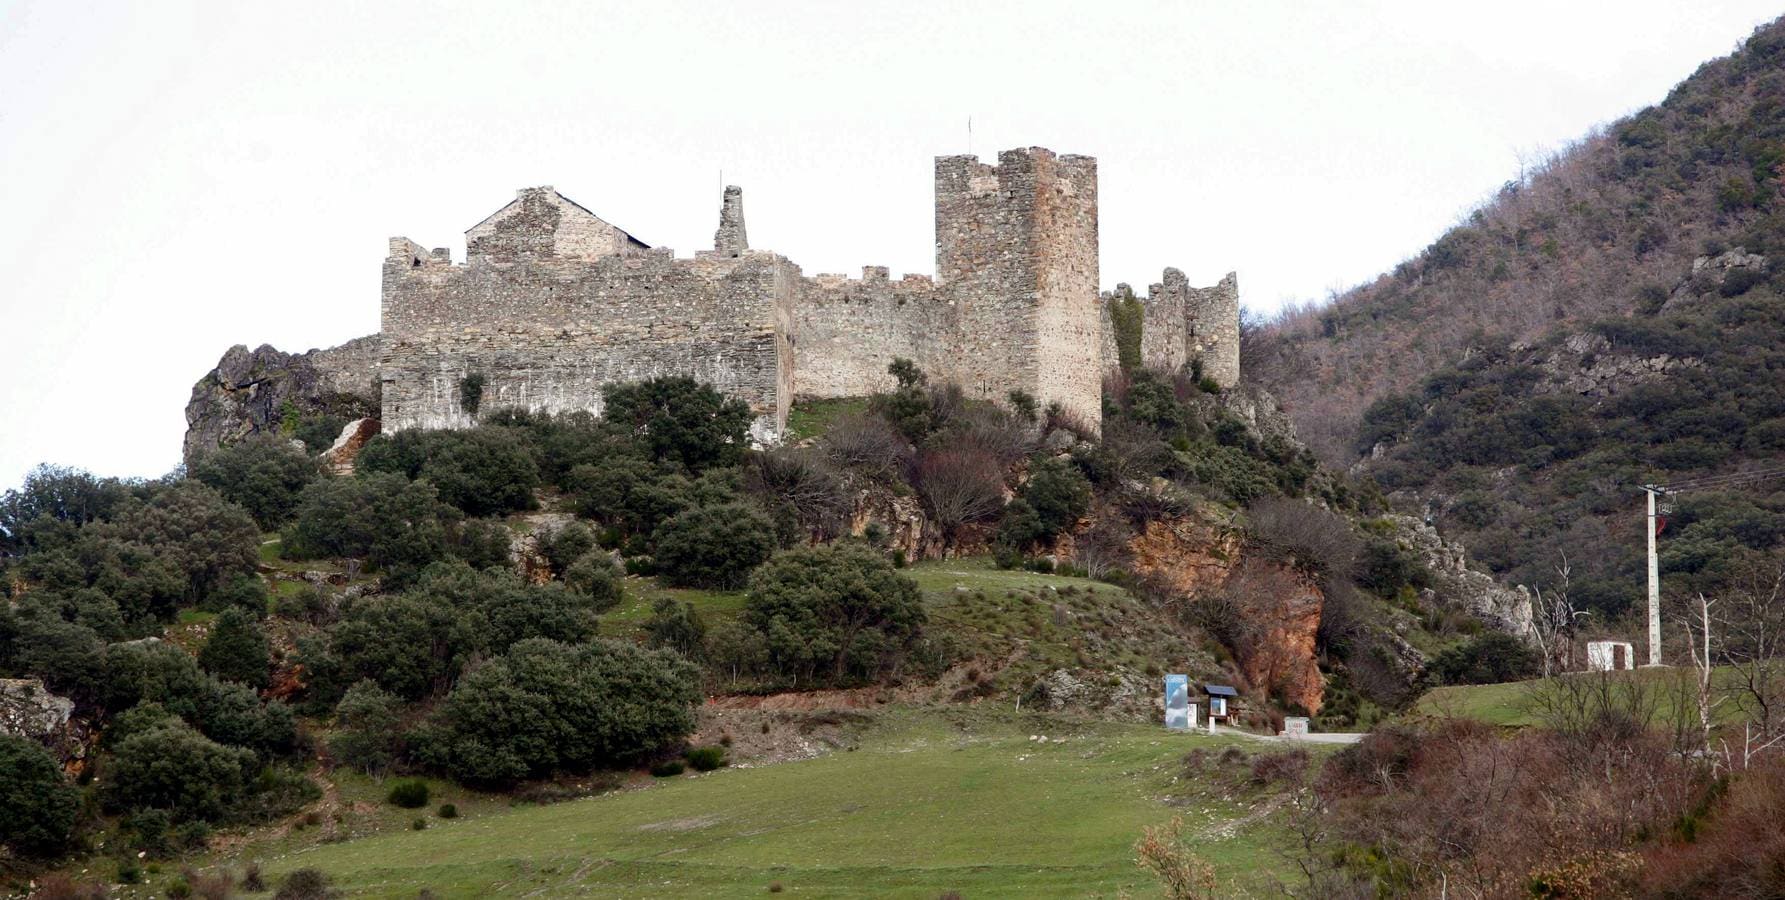 Castillo de Cornatel (León). Esta fortaleza, del siglo X, situada en el municipio de Priaranza del Bierzo, se adapta al territorio, ubicándose en una zona elevada desde donde se controla el Valle del Sil. Situado en el municipio de Priaranza del Bierzo,